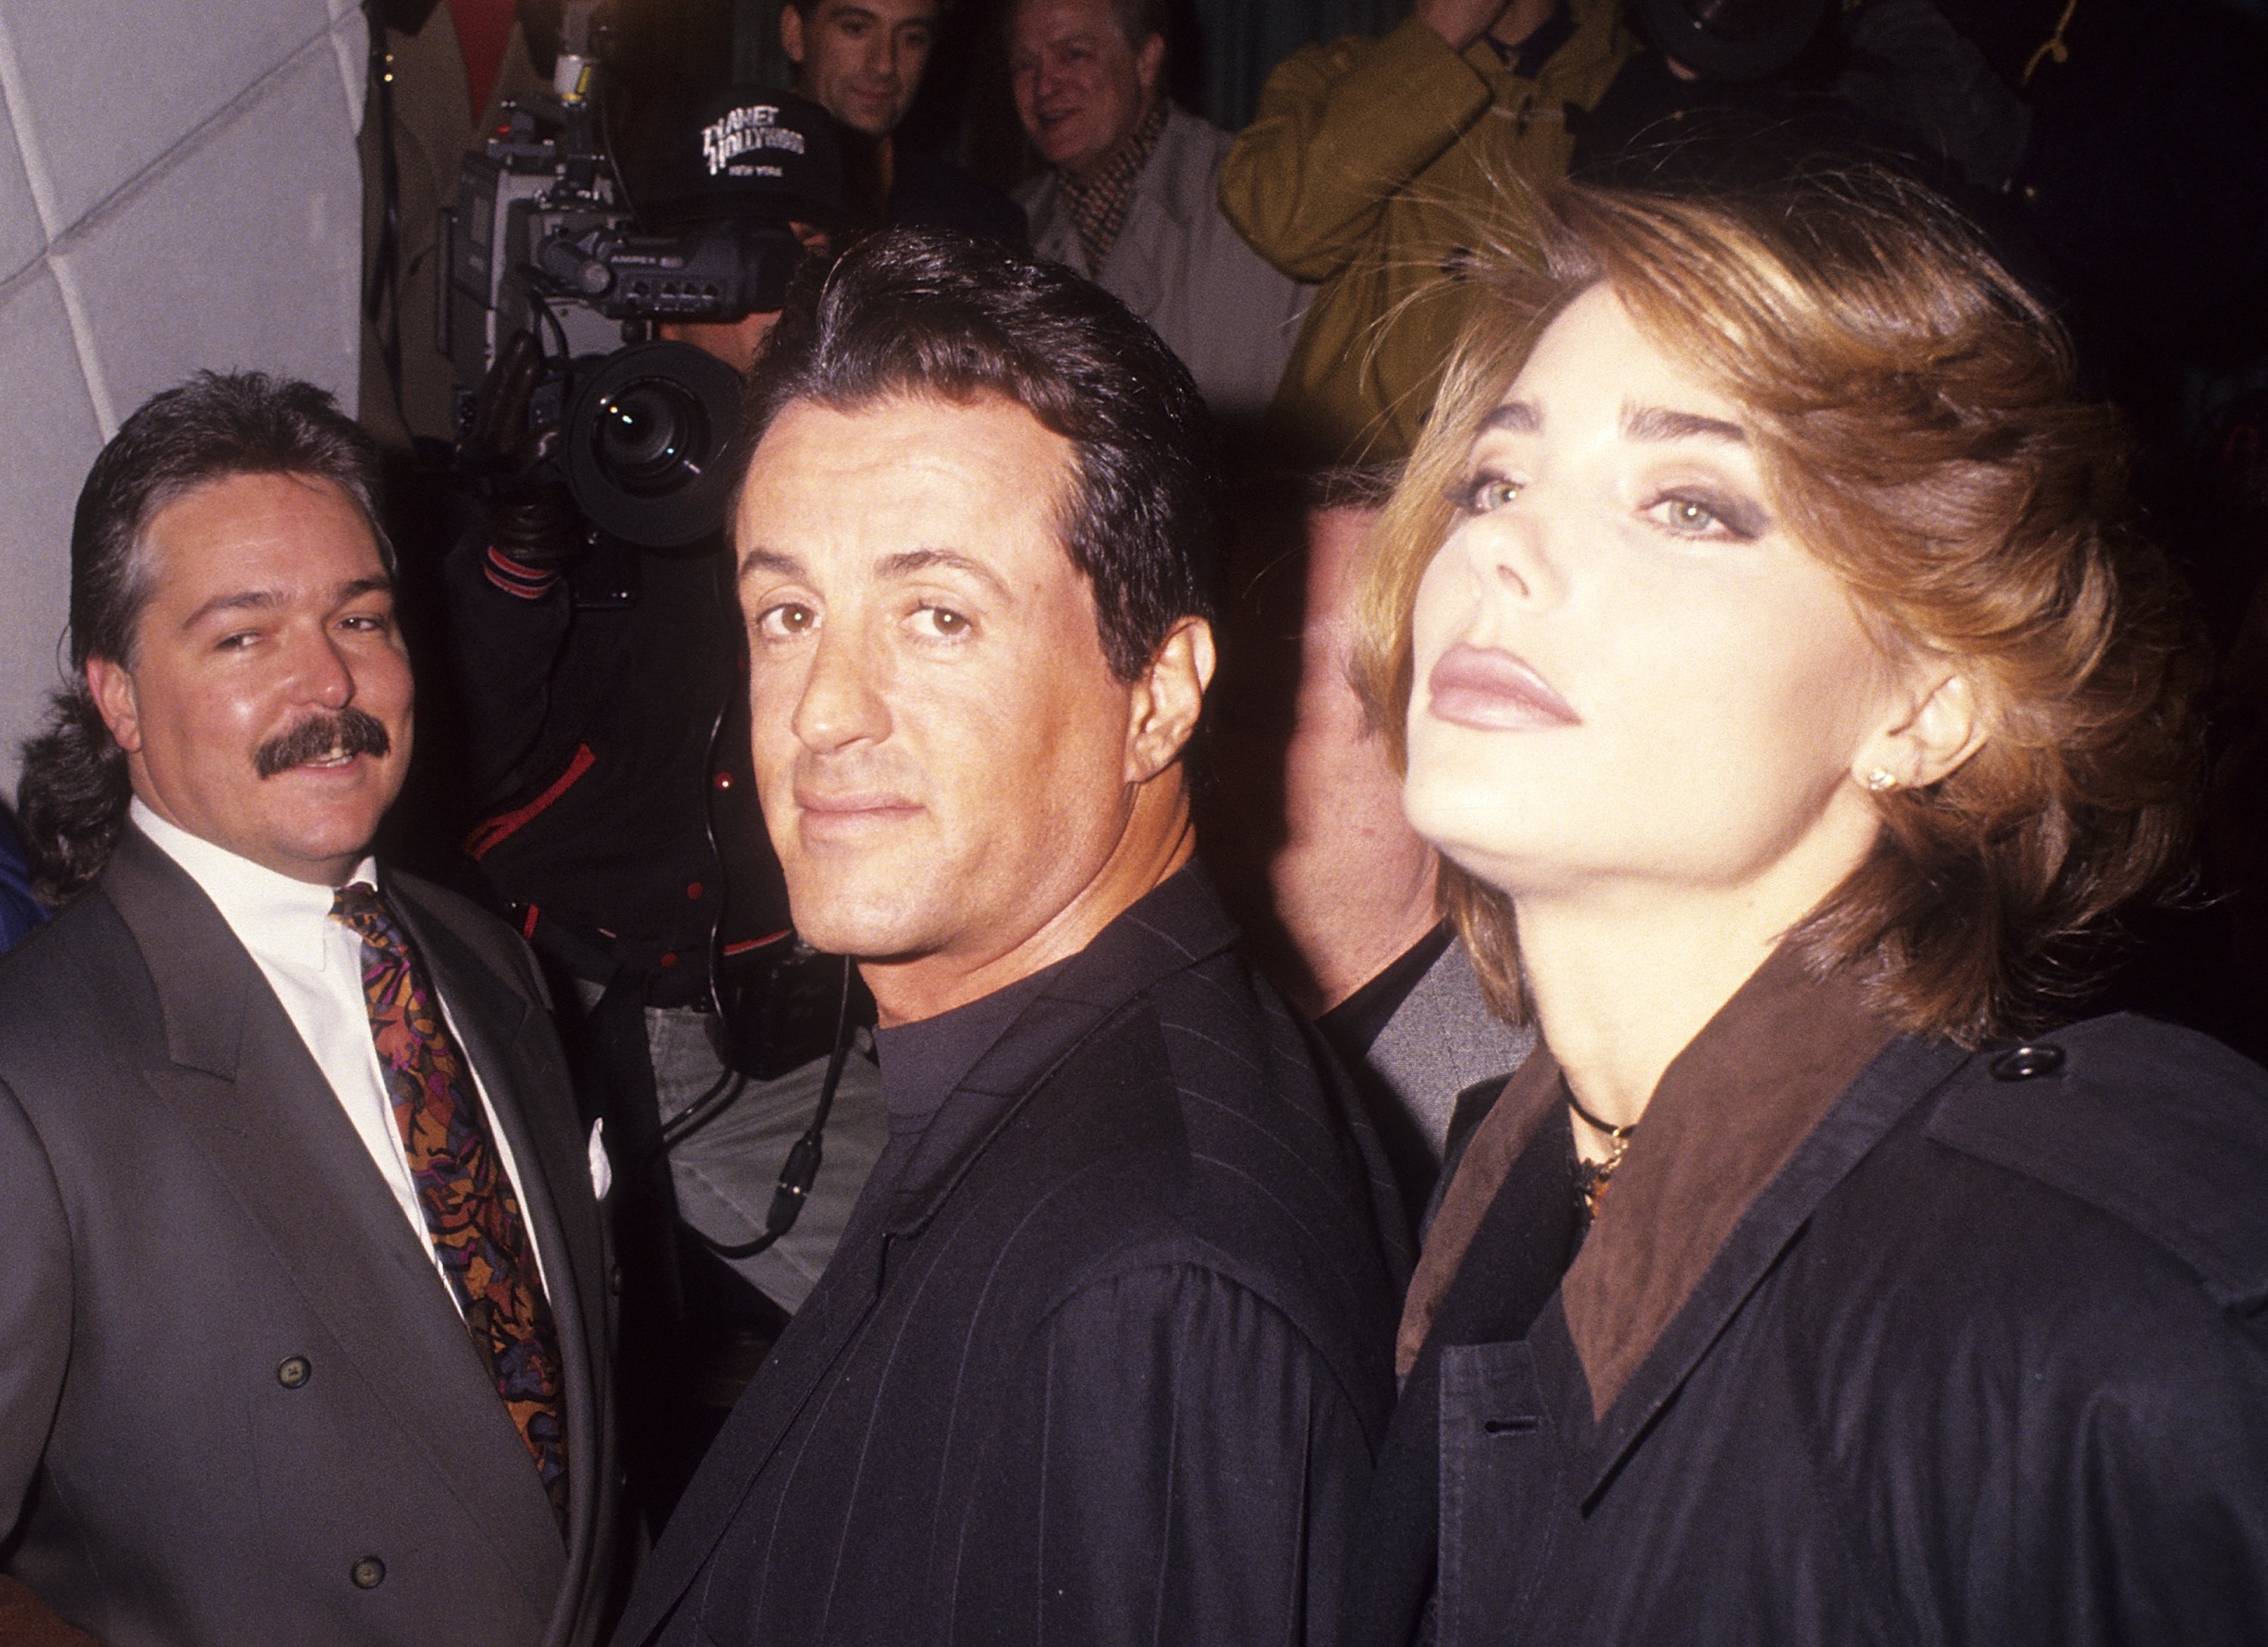 Παρευρίσκονται ο Sylvester Stallone και η φίλη Jennifer Flavin "Kiss AIDS Αντίο" Εμφάνιση και δημοπρασία των διάσημων φιλιών του Χόλιγουντ στο Planet Hollywood 140 West 57th Street στις 10 Φεβρουαρίου 1992 στη Νέα Υόρκη.  |  Πηγή: Getty Images